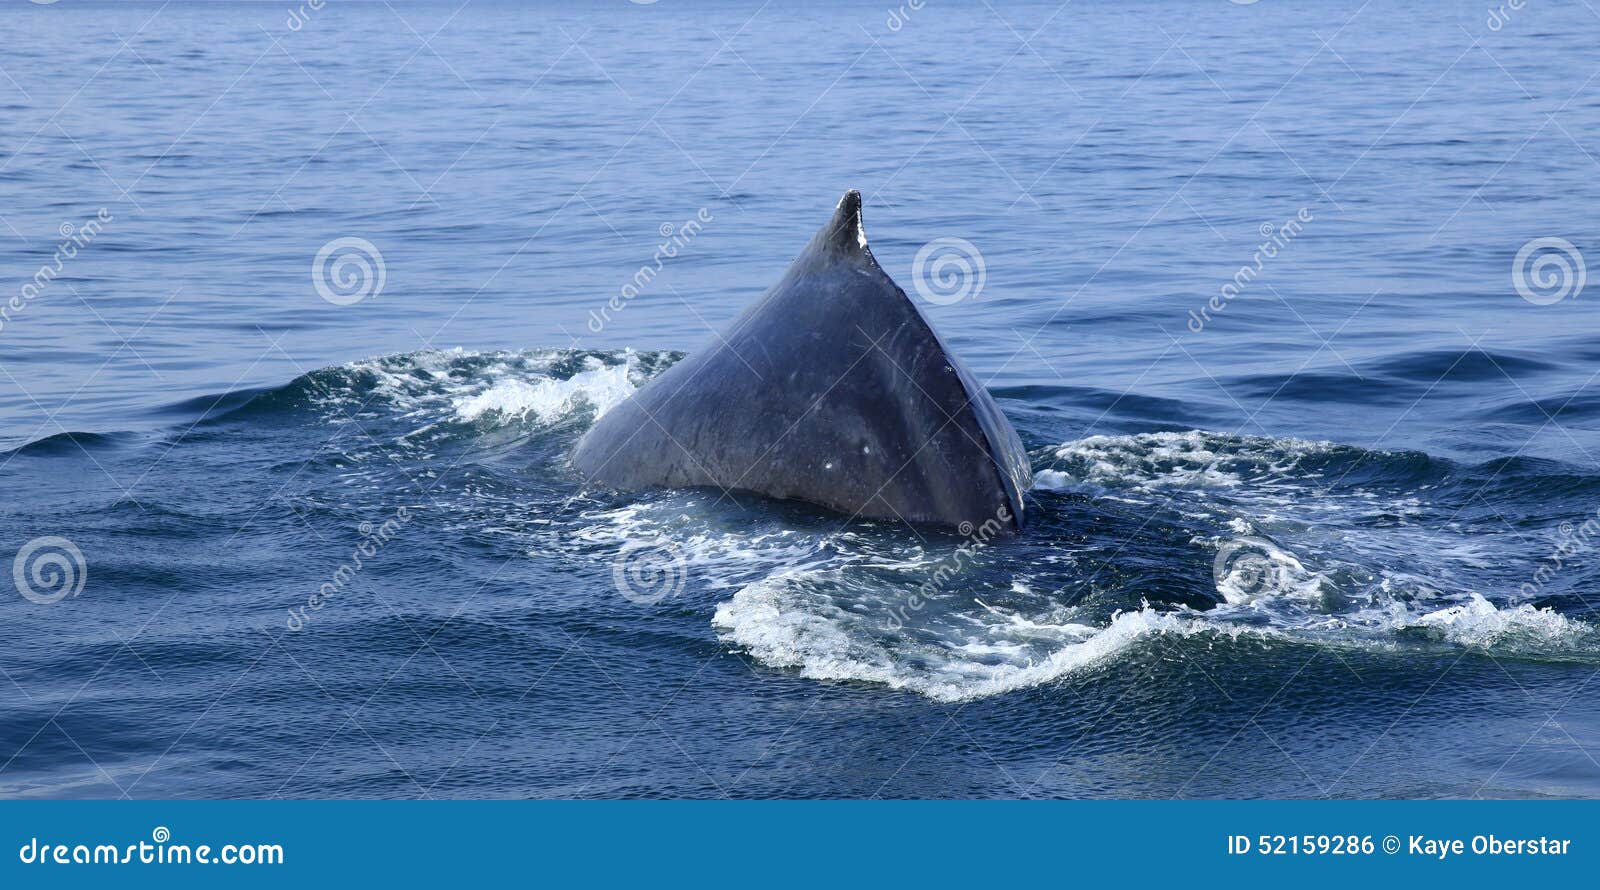 Whale Watching In Puerto Vallarta Stock Photo - Image of bahia, baleen